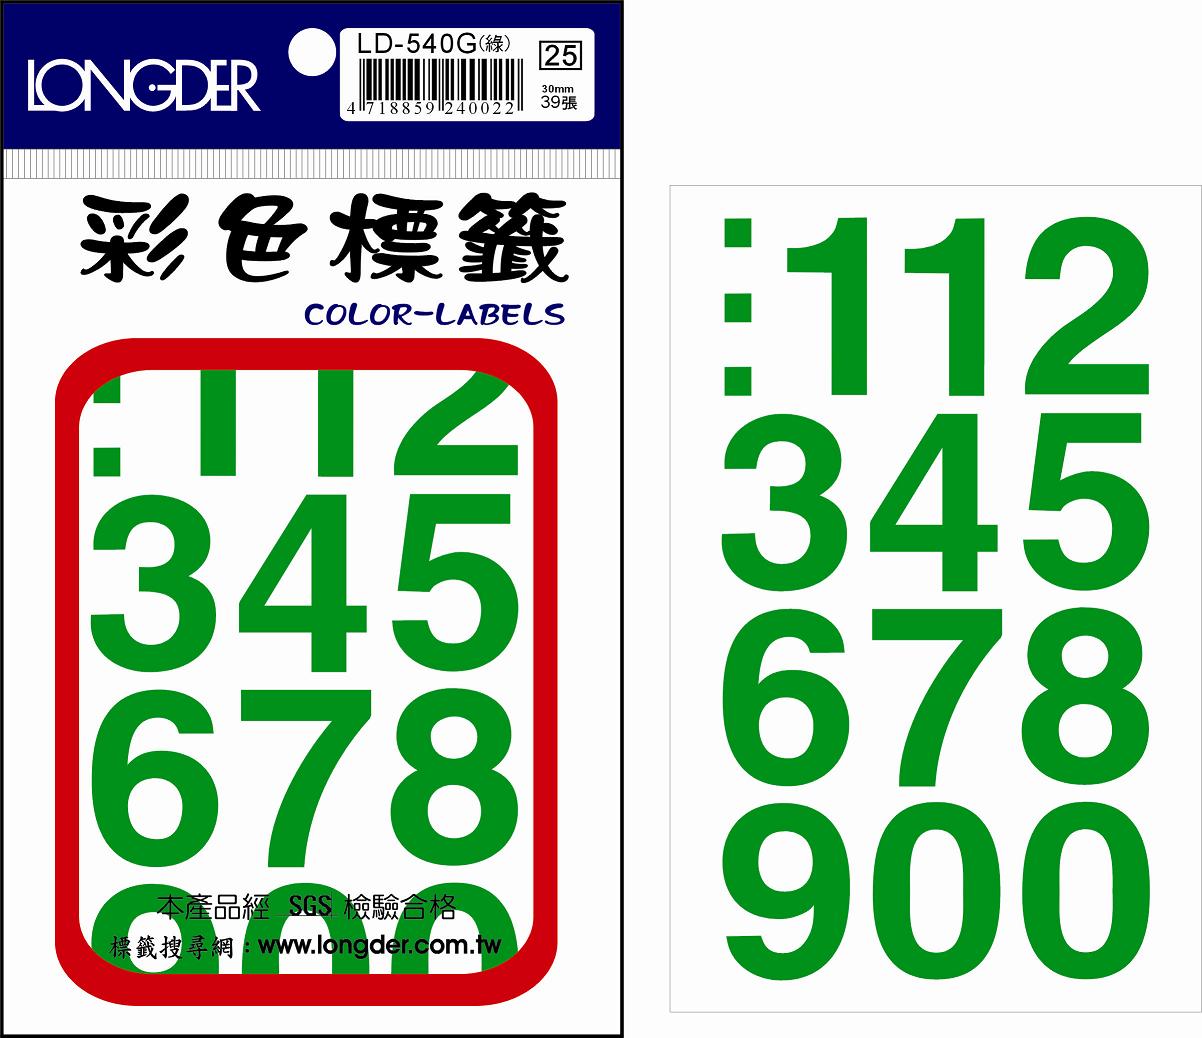 龍德 彩色數字標籤 LD-540G (30mm) /包